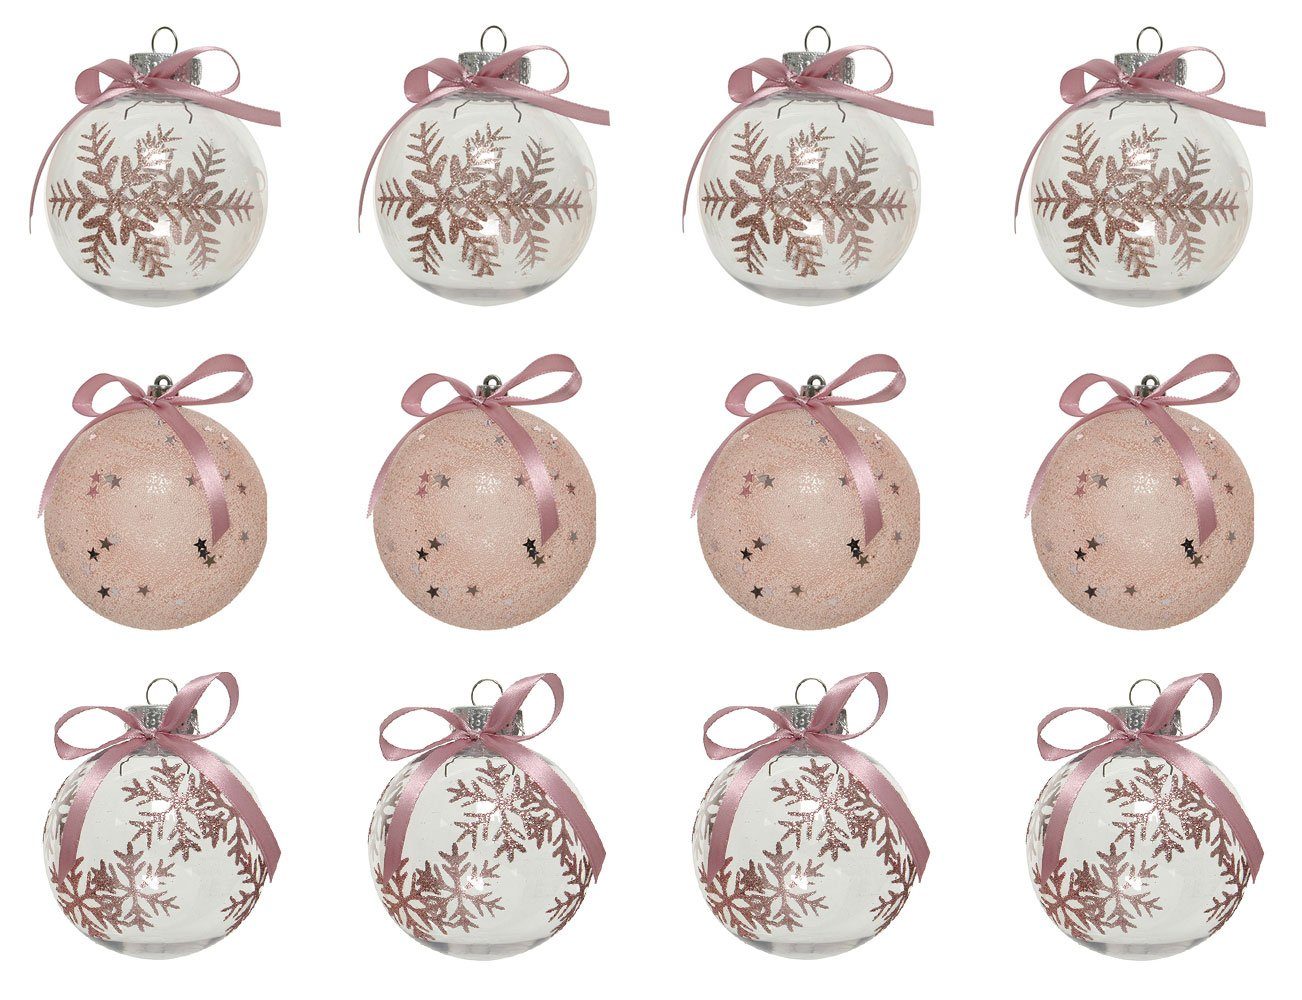 Decoris season decorations Weihnachtsbaumkugel, Weihnachtskugeln Kunststoff mit Motiv 8cm rosa transparent, 12er Set